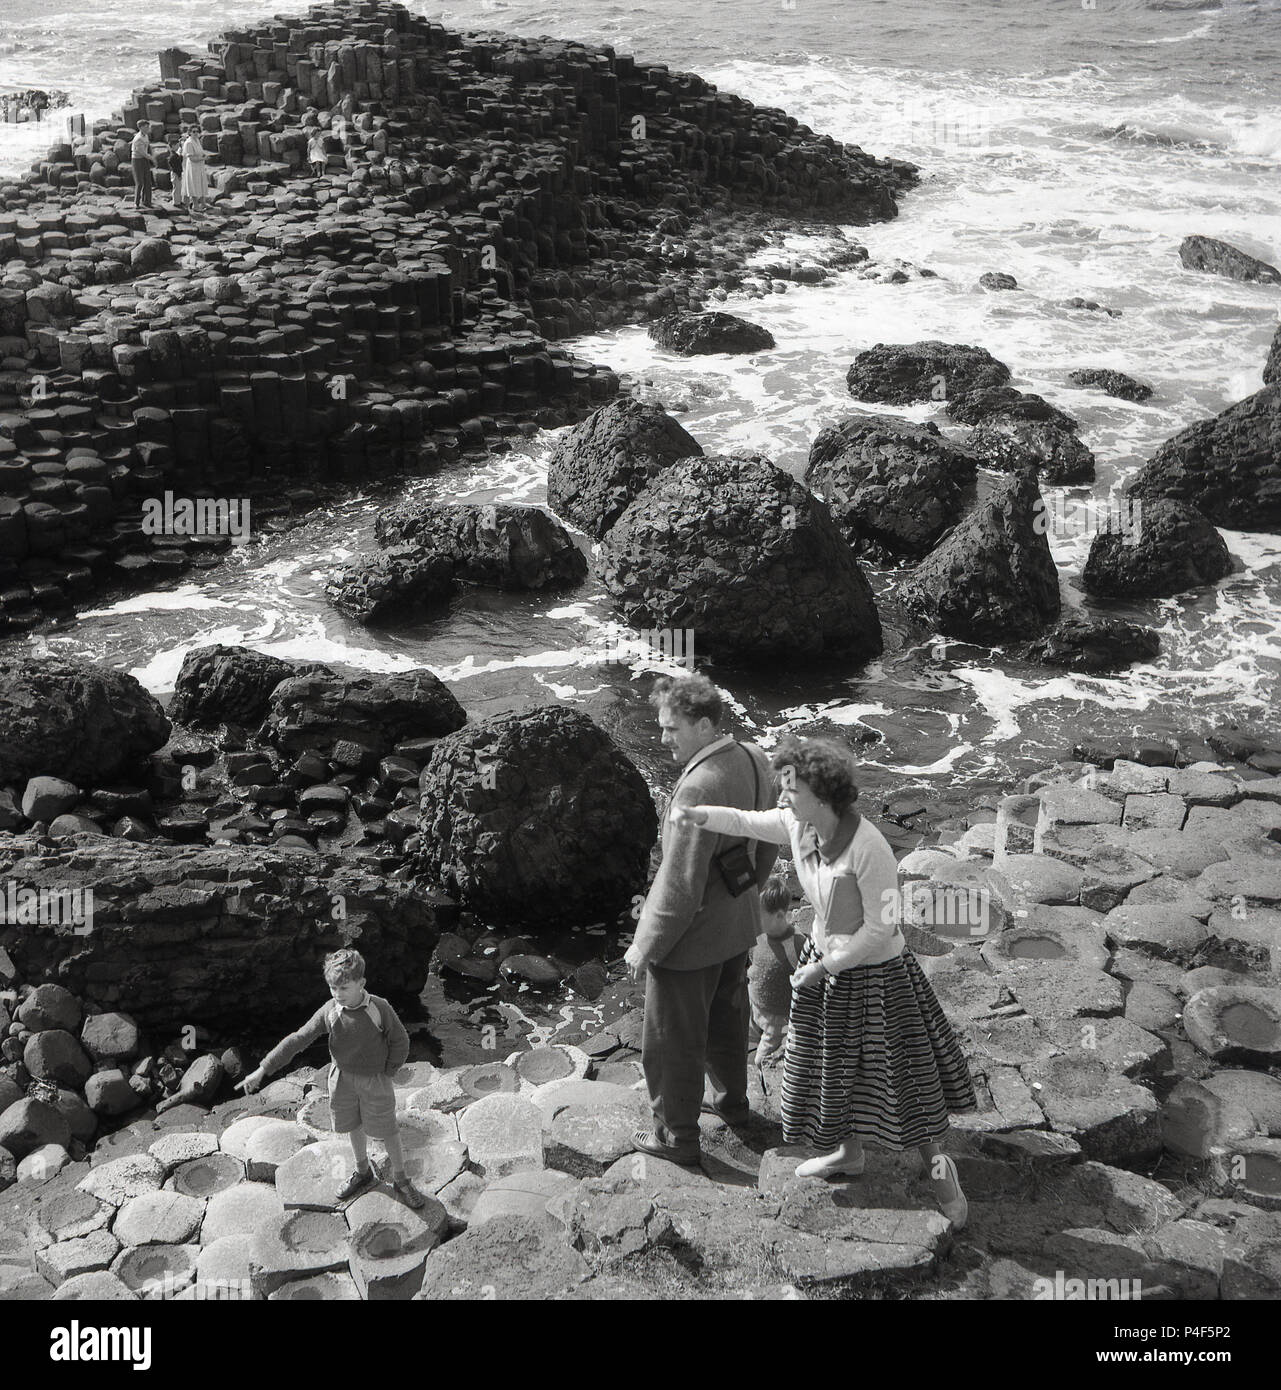 Années 1950, historique, la mère, le père et leur jeune garçon sur le rock hexagonal à colonnes le célèbre Giant's Causeway, le comté d'Antrim, en Irlande du Nord. Cette zone côtière unique de colonnes de basalte, le résultat d'une ancienne fissure volcanique éruption est une merveille de la nature. Banque D'Images